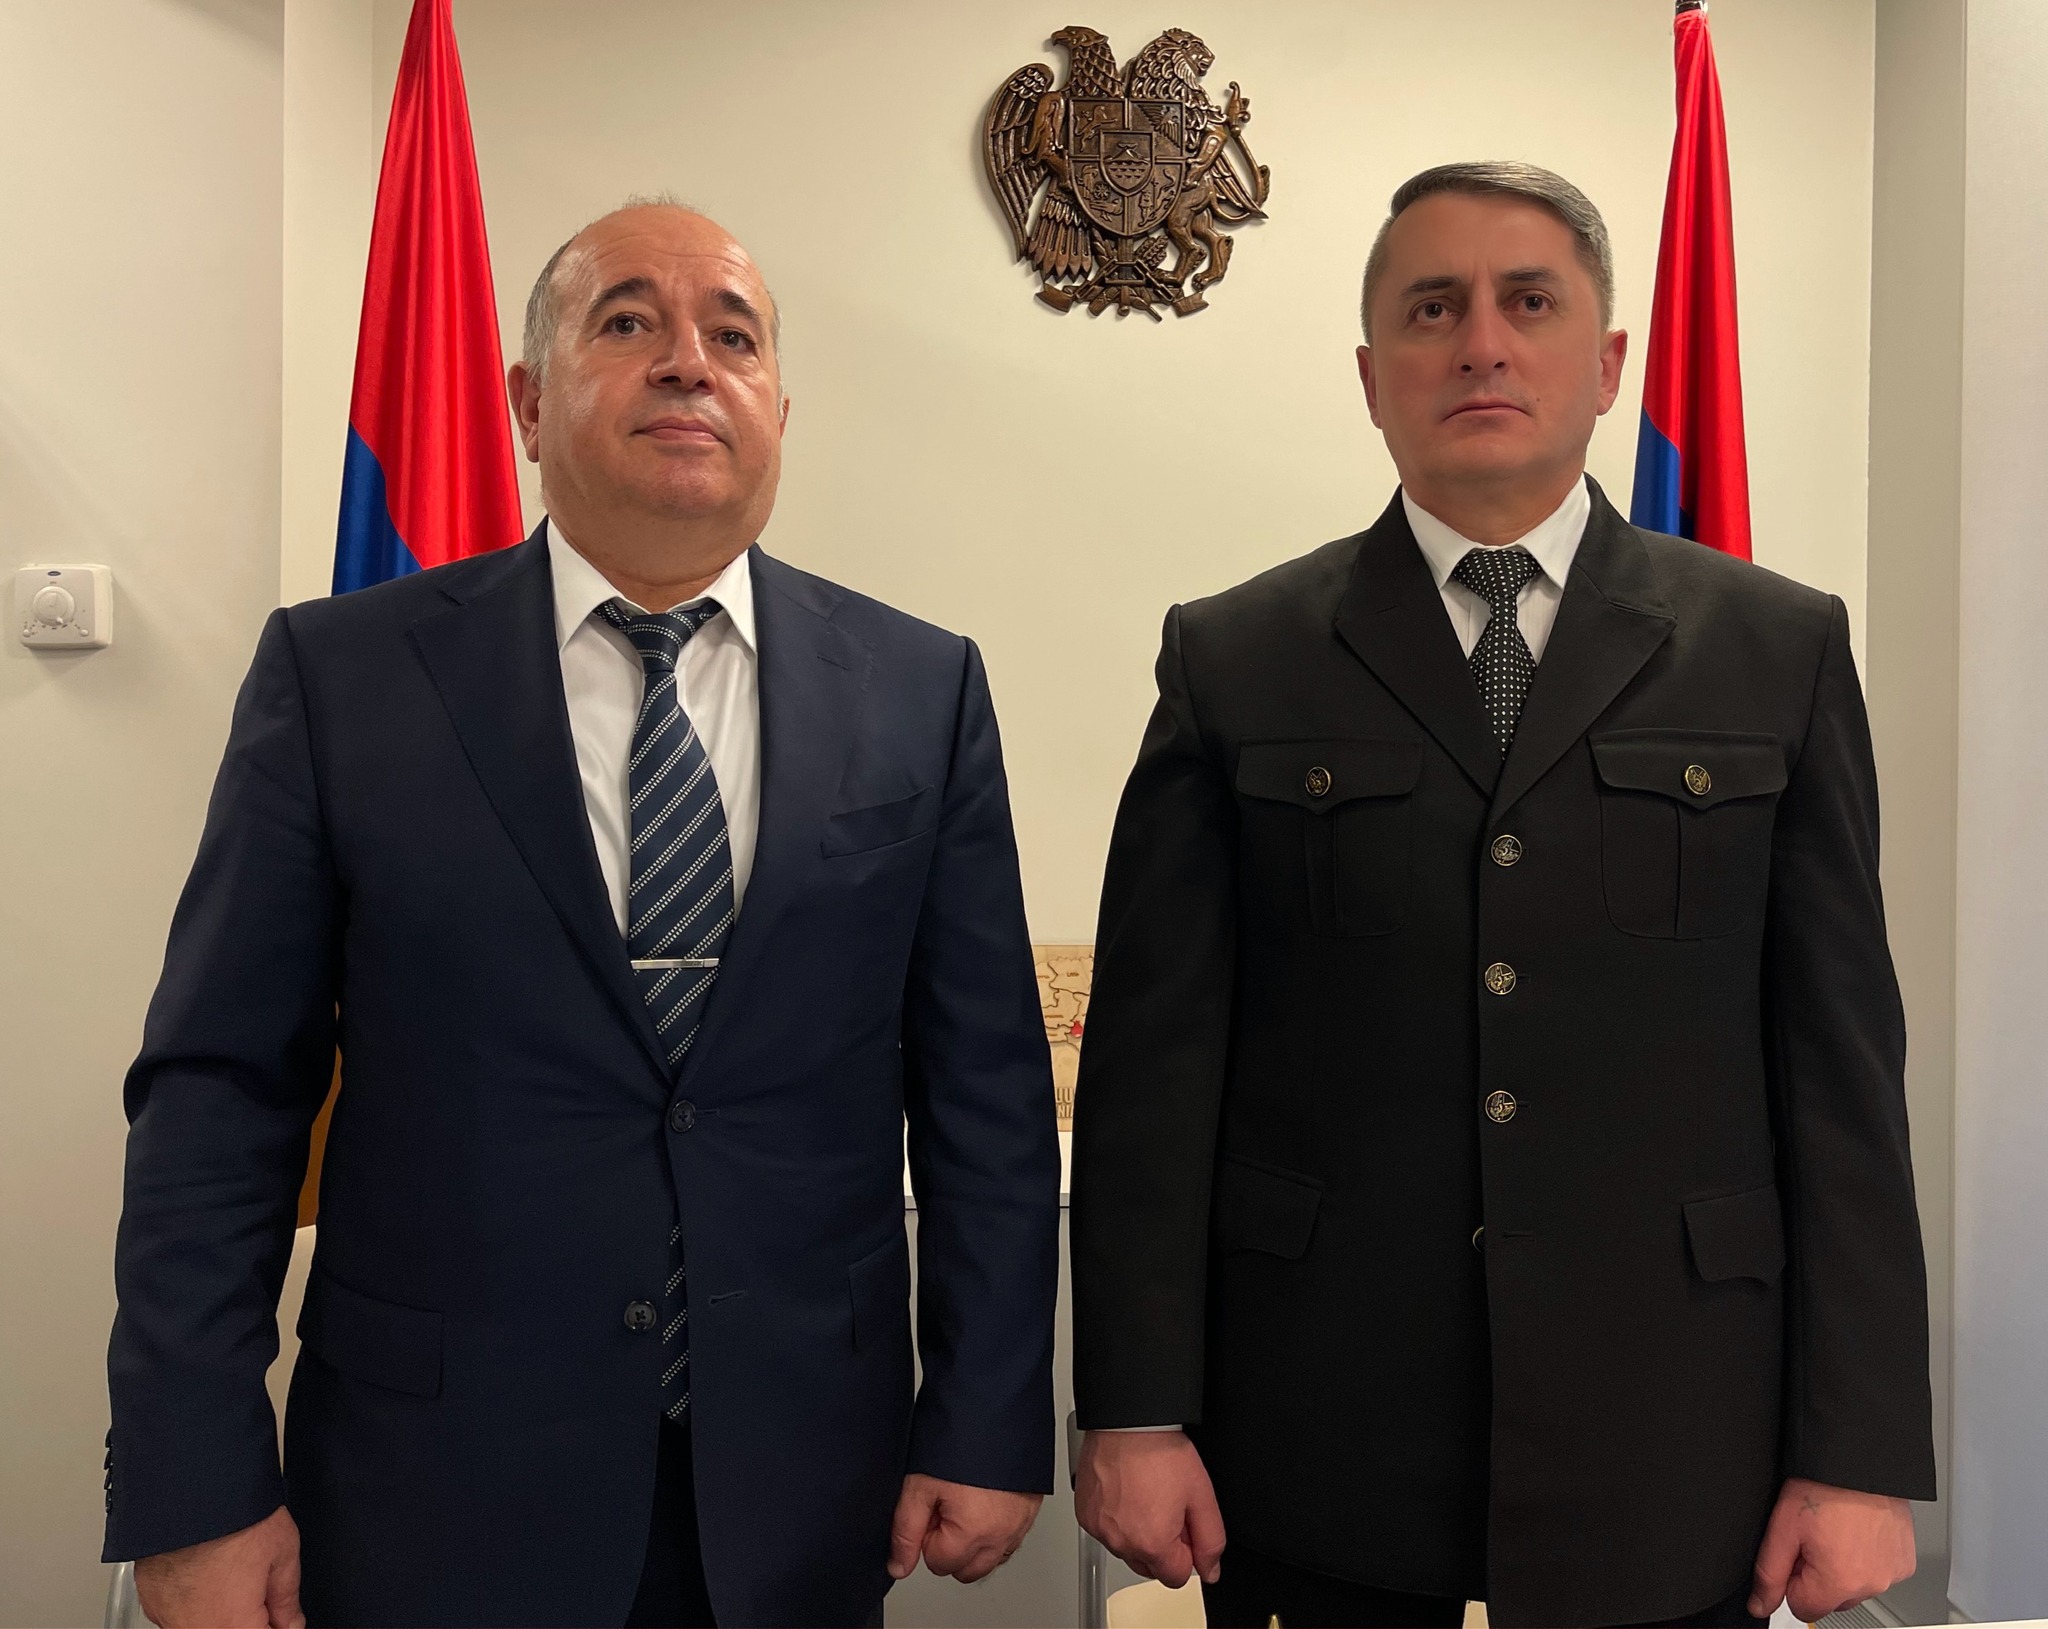 Ո՞վ պետք է լինի Հայաստանի հաջորդ վարչապետը. Խաչիկ Ասրյանը ունի պատասխան